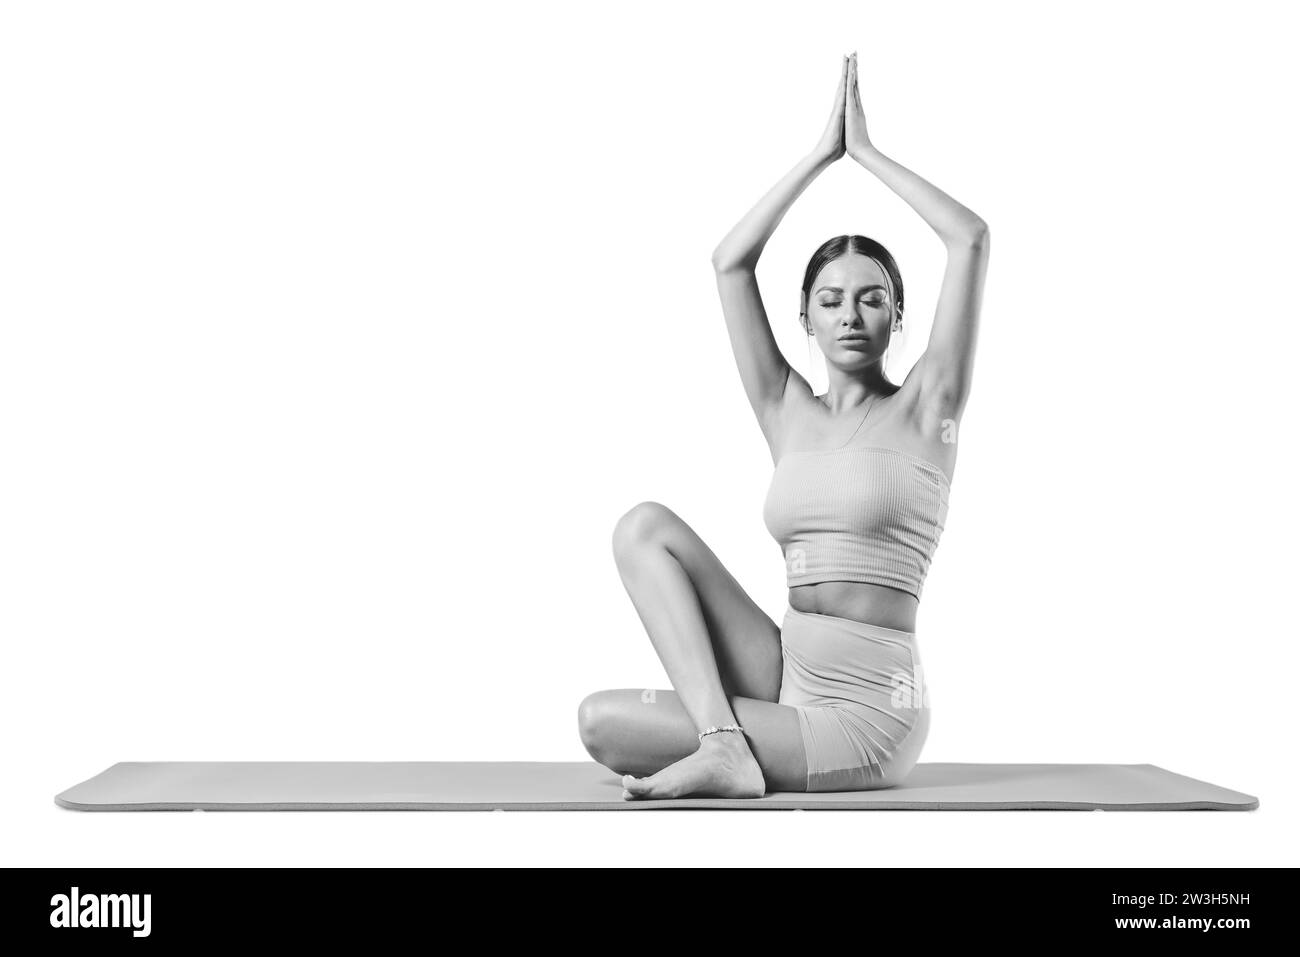 Jeune femme sportive pratiquant le yoga. Isolé sur fond blanc. Le concept d'un mode de vie sain et l'équilibre naturel entre le corps et Banque D'Images